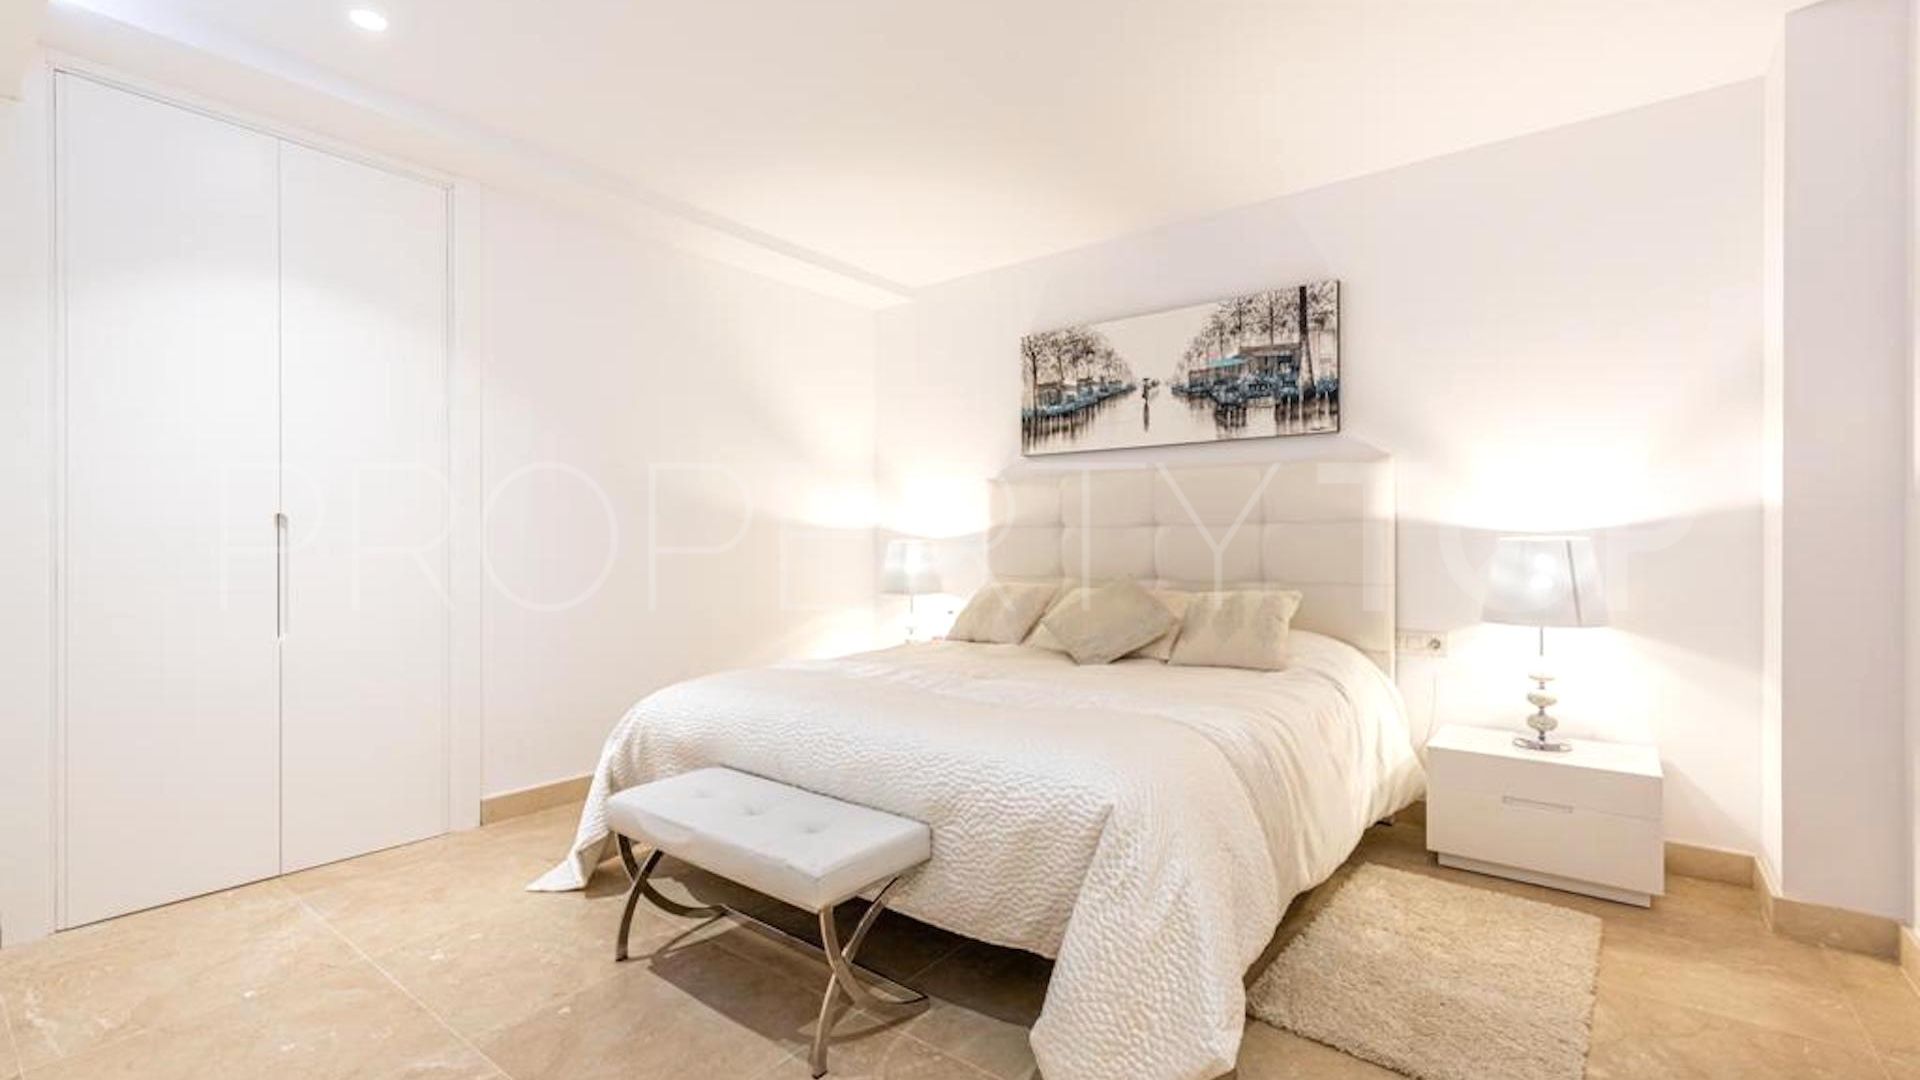 Villa en venta de 5 dormitorios en La Finca de Marbella